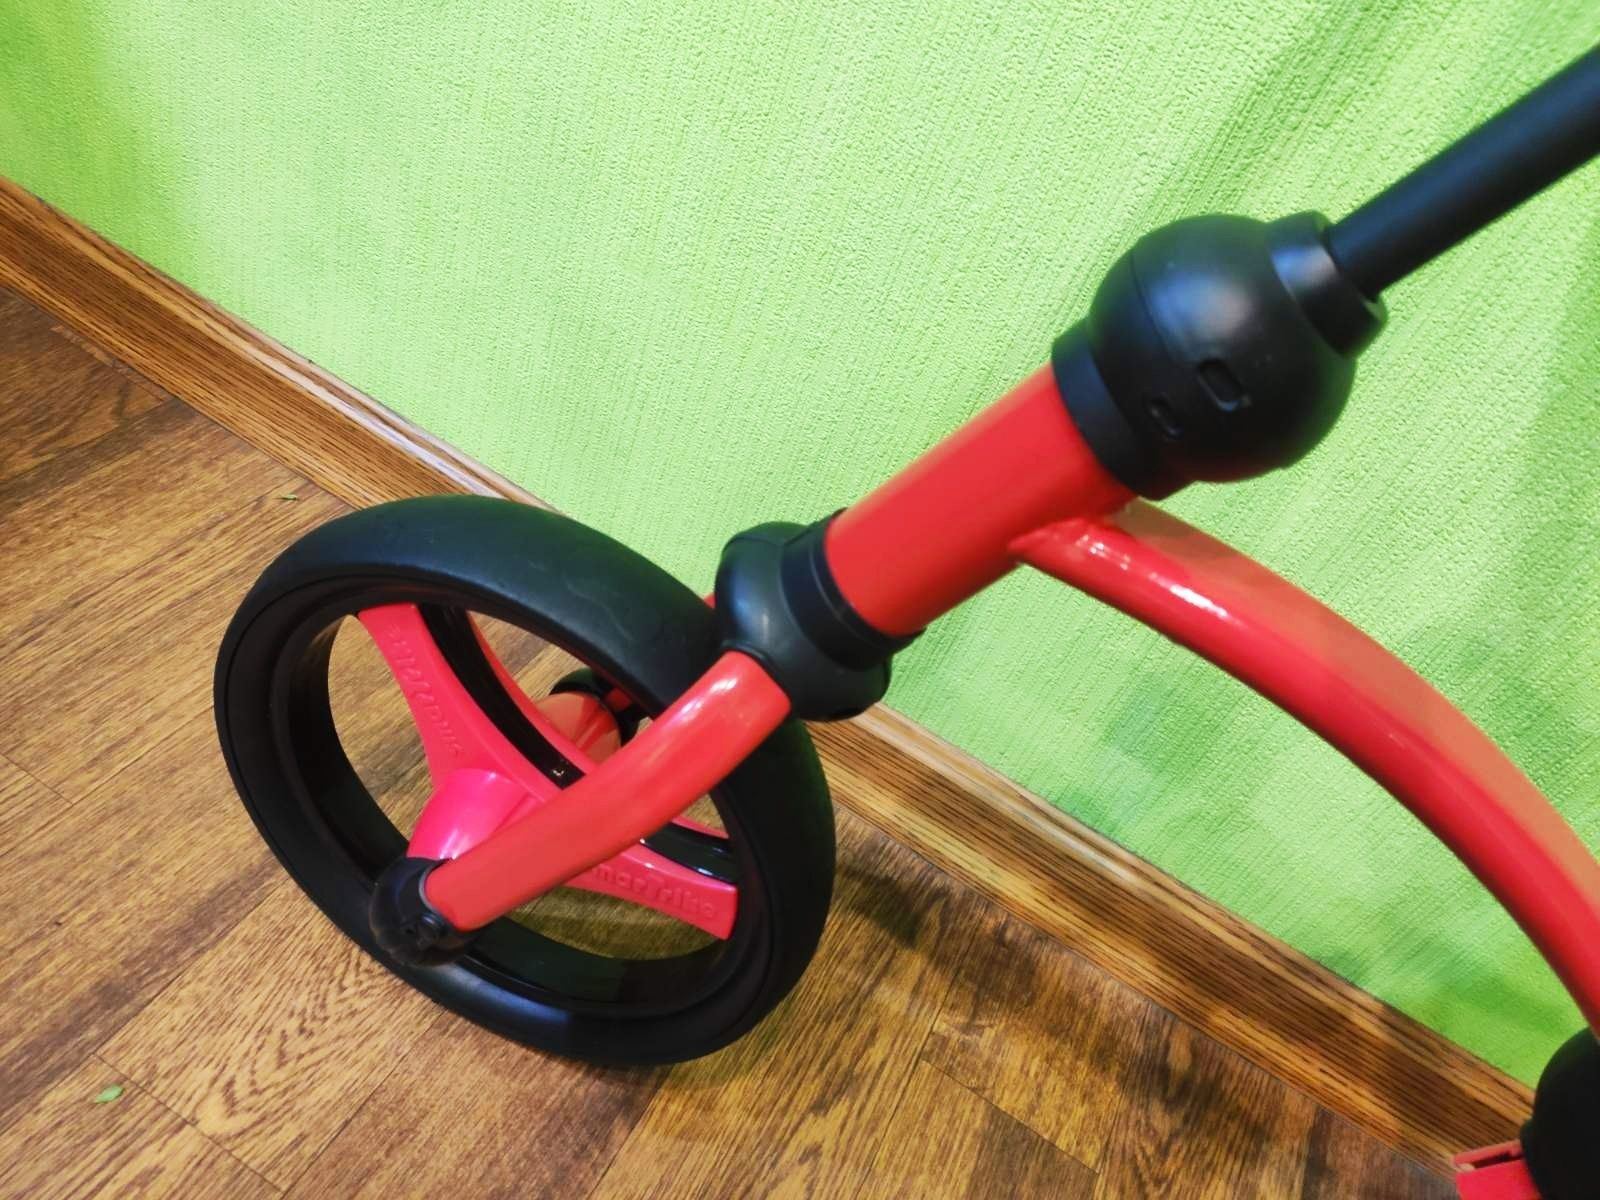 Велосипед Велобег Smart Trike Running Bike красный